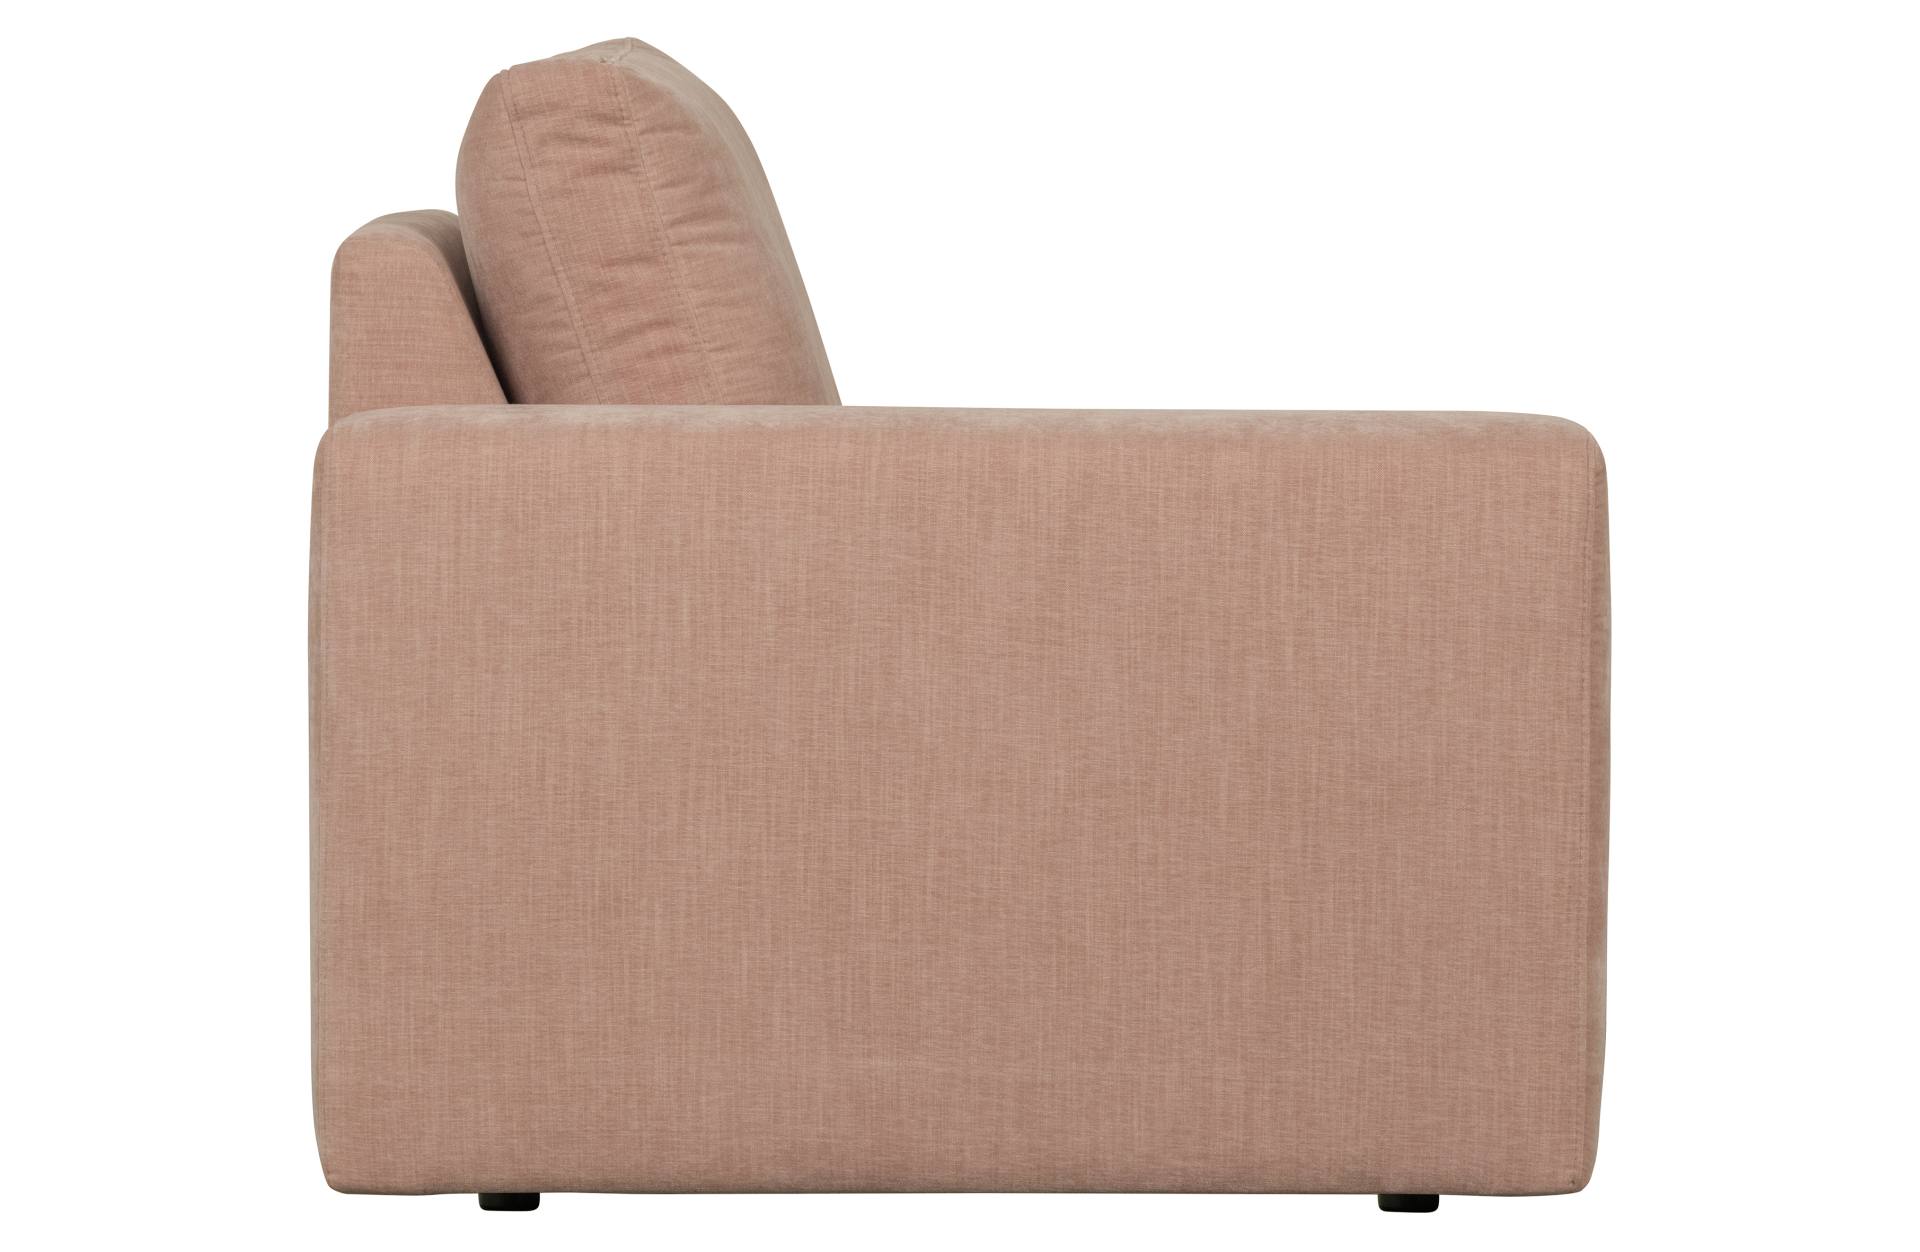 Das Modulsofa Family überzeugt mit seinem modernen Design. Das 1-Seat Element mit der Ausführung Links wurde aus Gewebe-Stoff gefertigt, welcher einen einen rosa Farbton besitzen. Das Gestell ist aus Metall und hat eine schwarze Farbe. Das Element hat ein